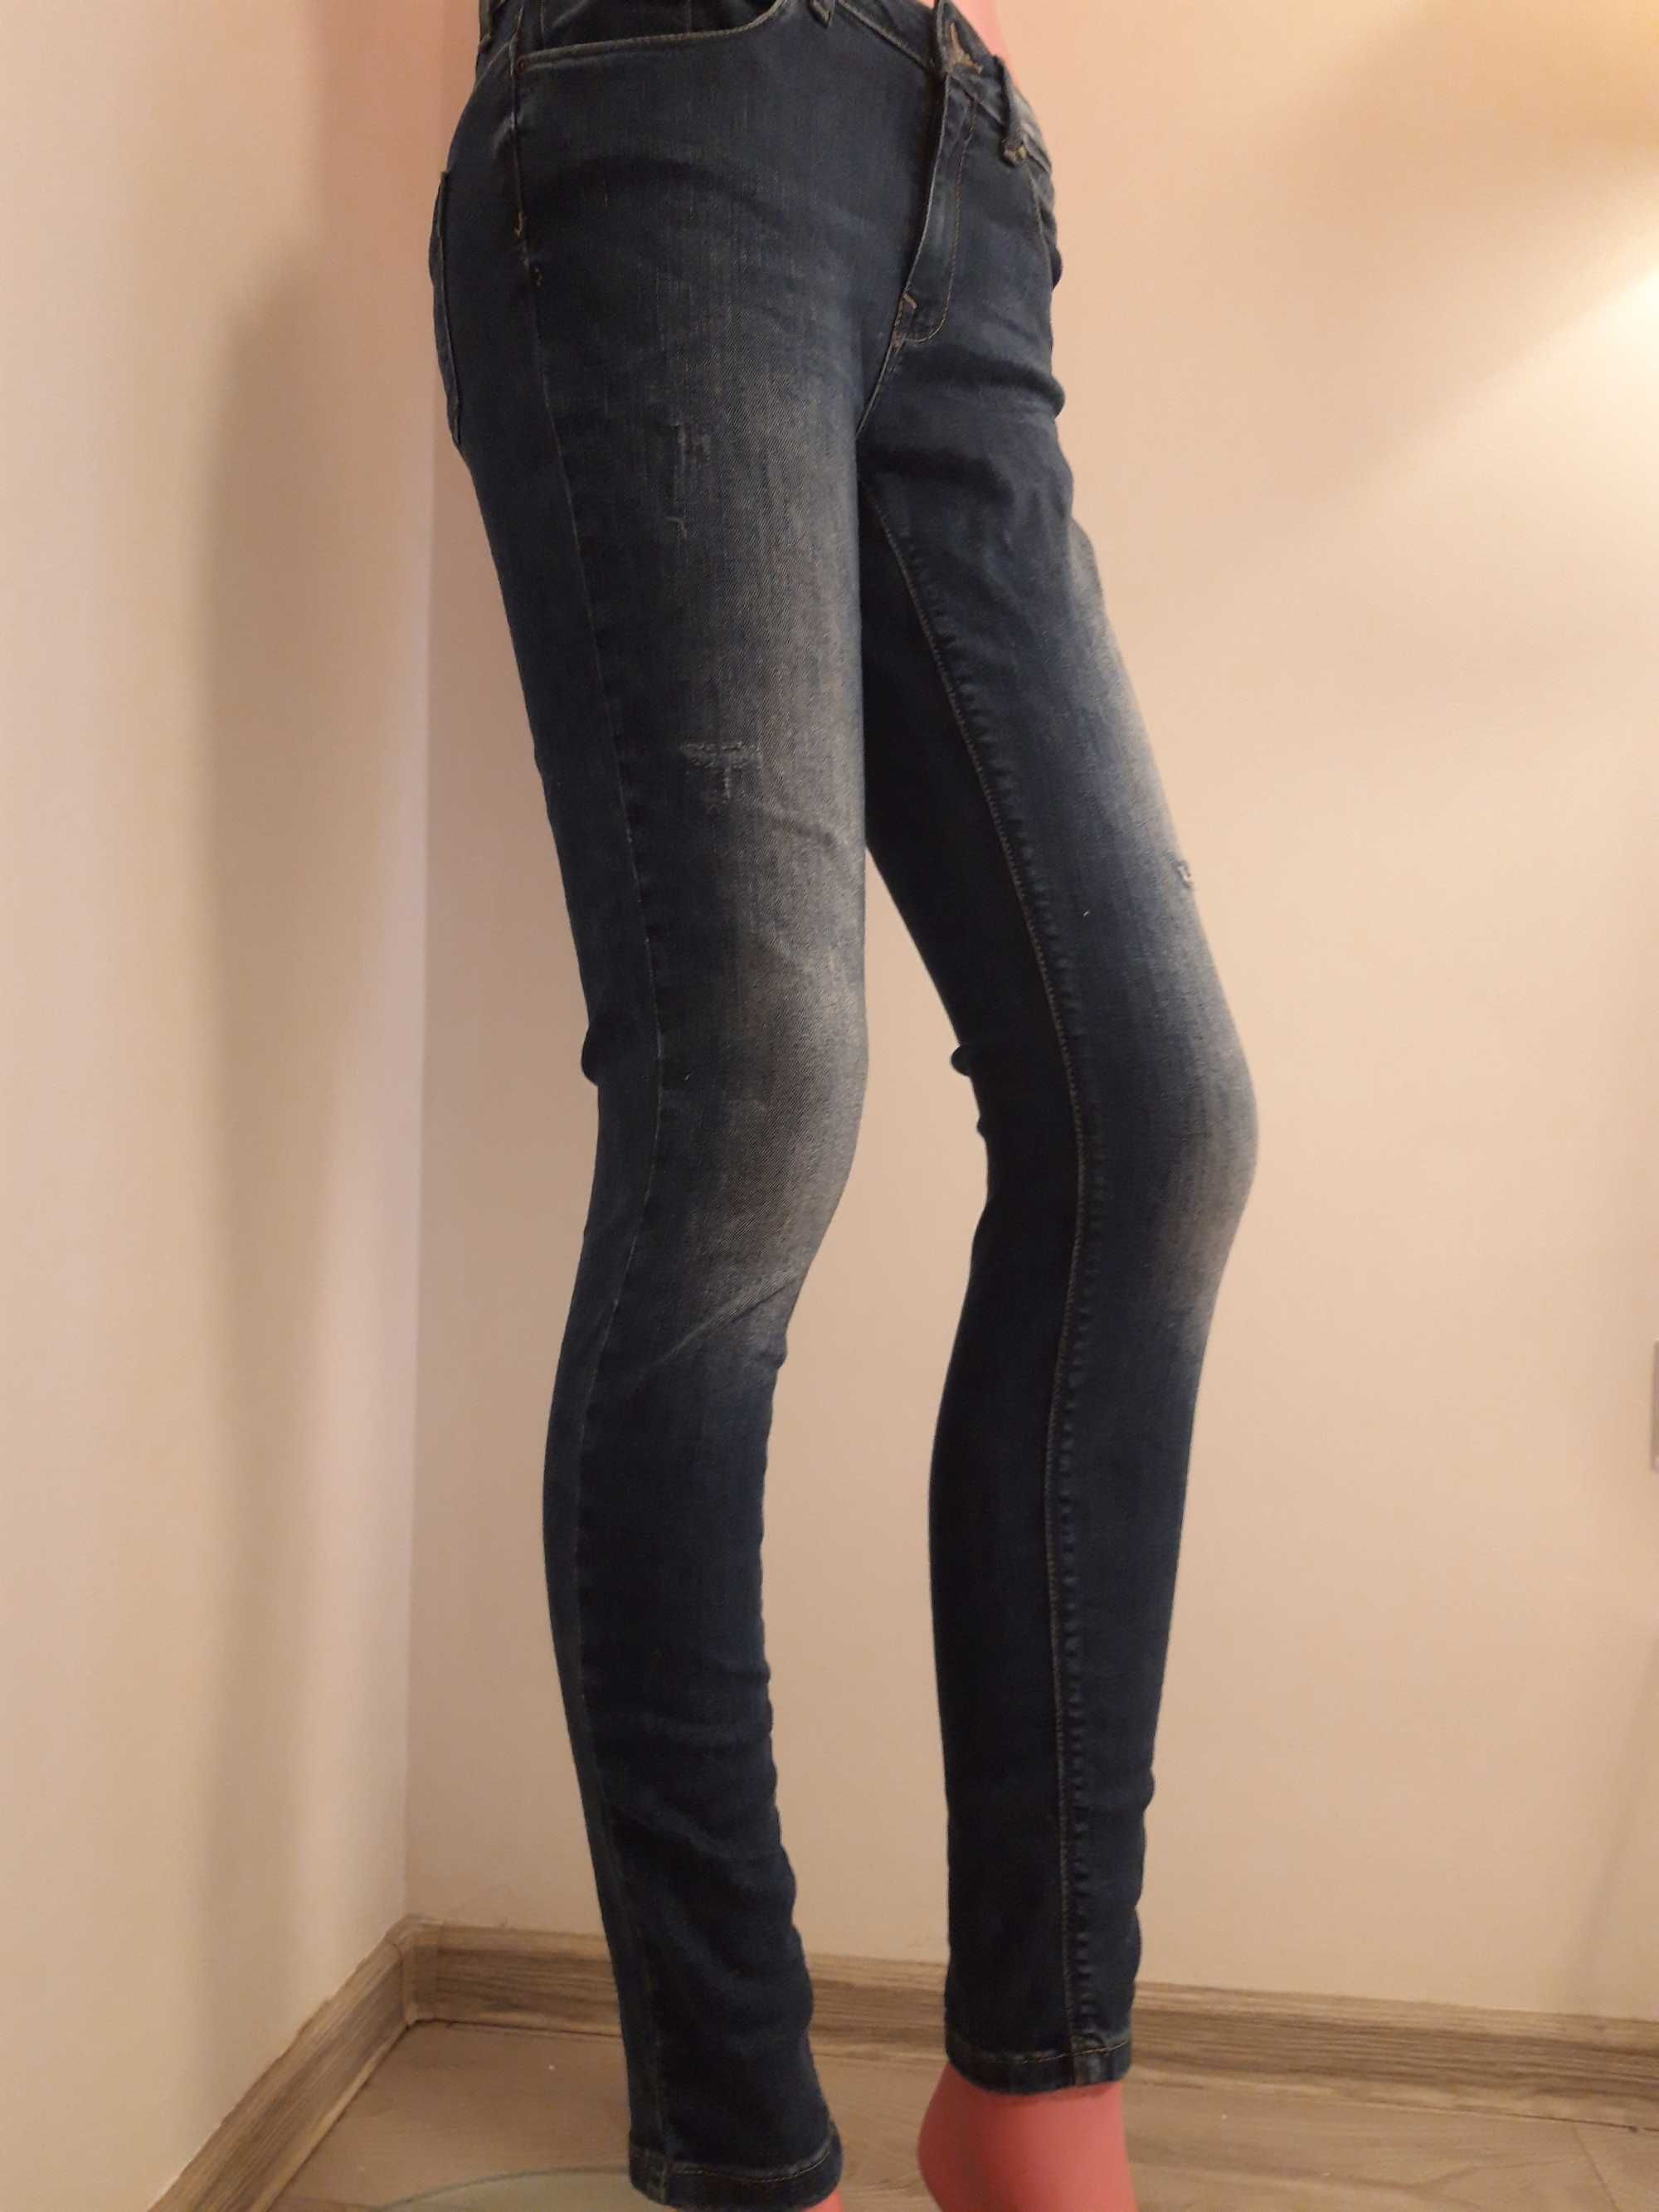 Blugi/Jeans dama drepti si rupti originali - lot 6 perechi S/M